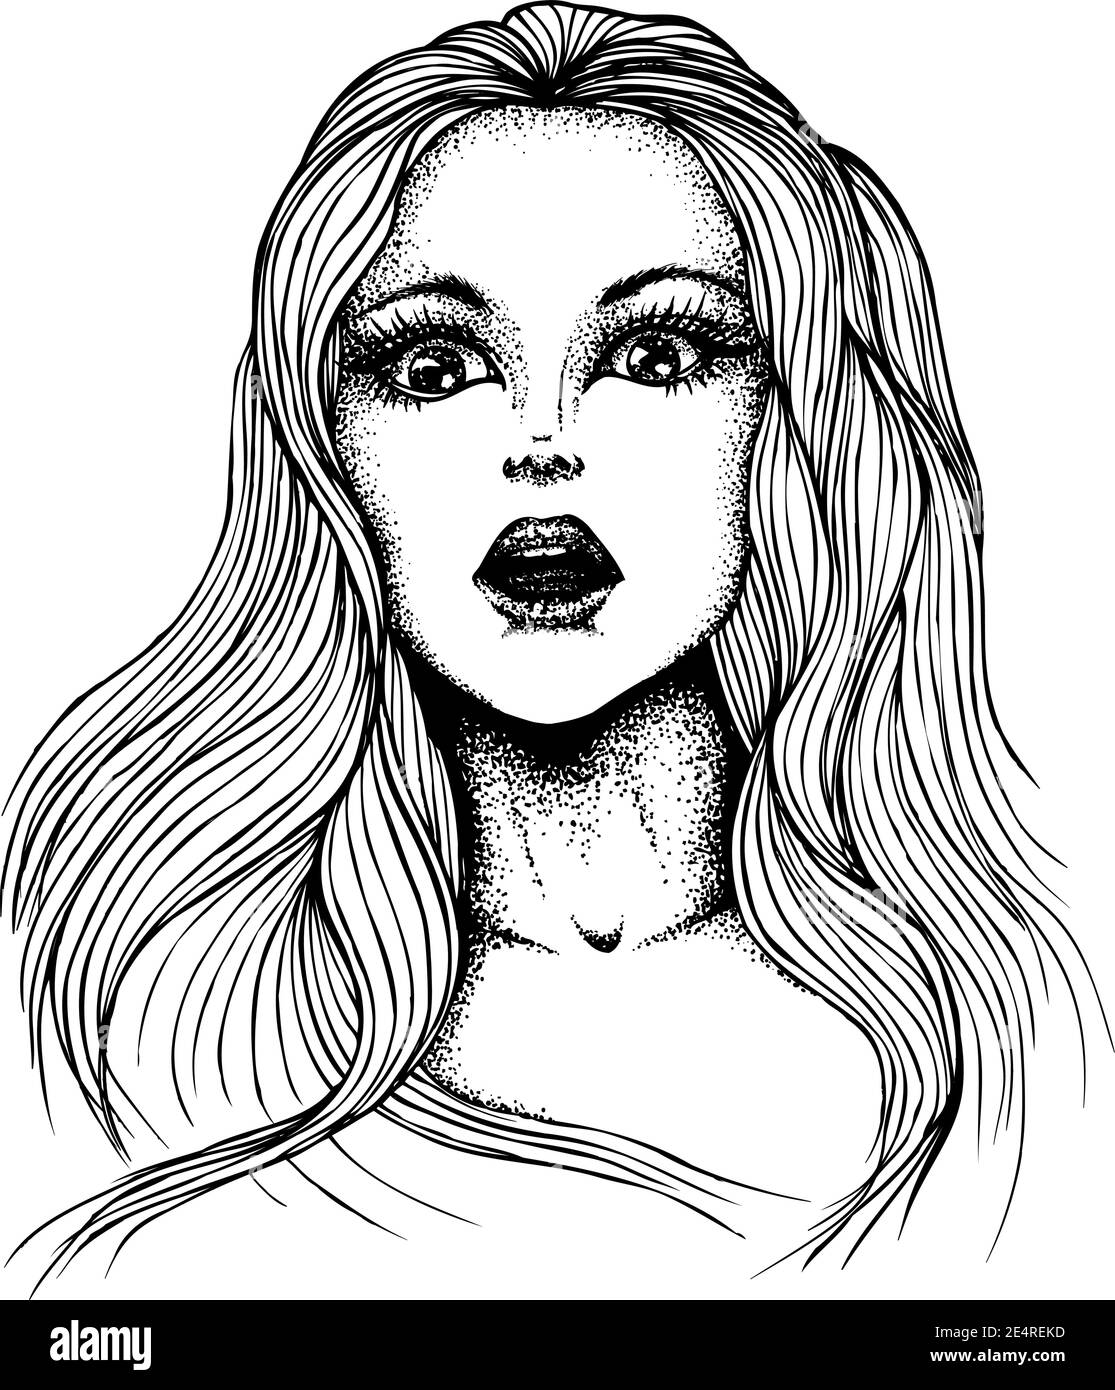 Porträt eines geschockten überrascht Mädchen mit langen Haaren. Vektor handgezeichnete Illustration. Monochrome Zeichnung isoliert auf weißem Hintergrund Stock Vektor